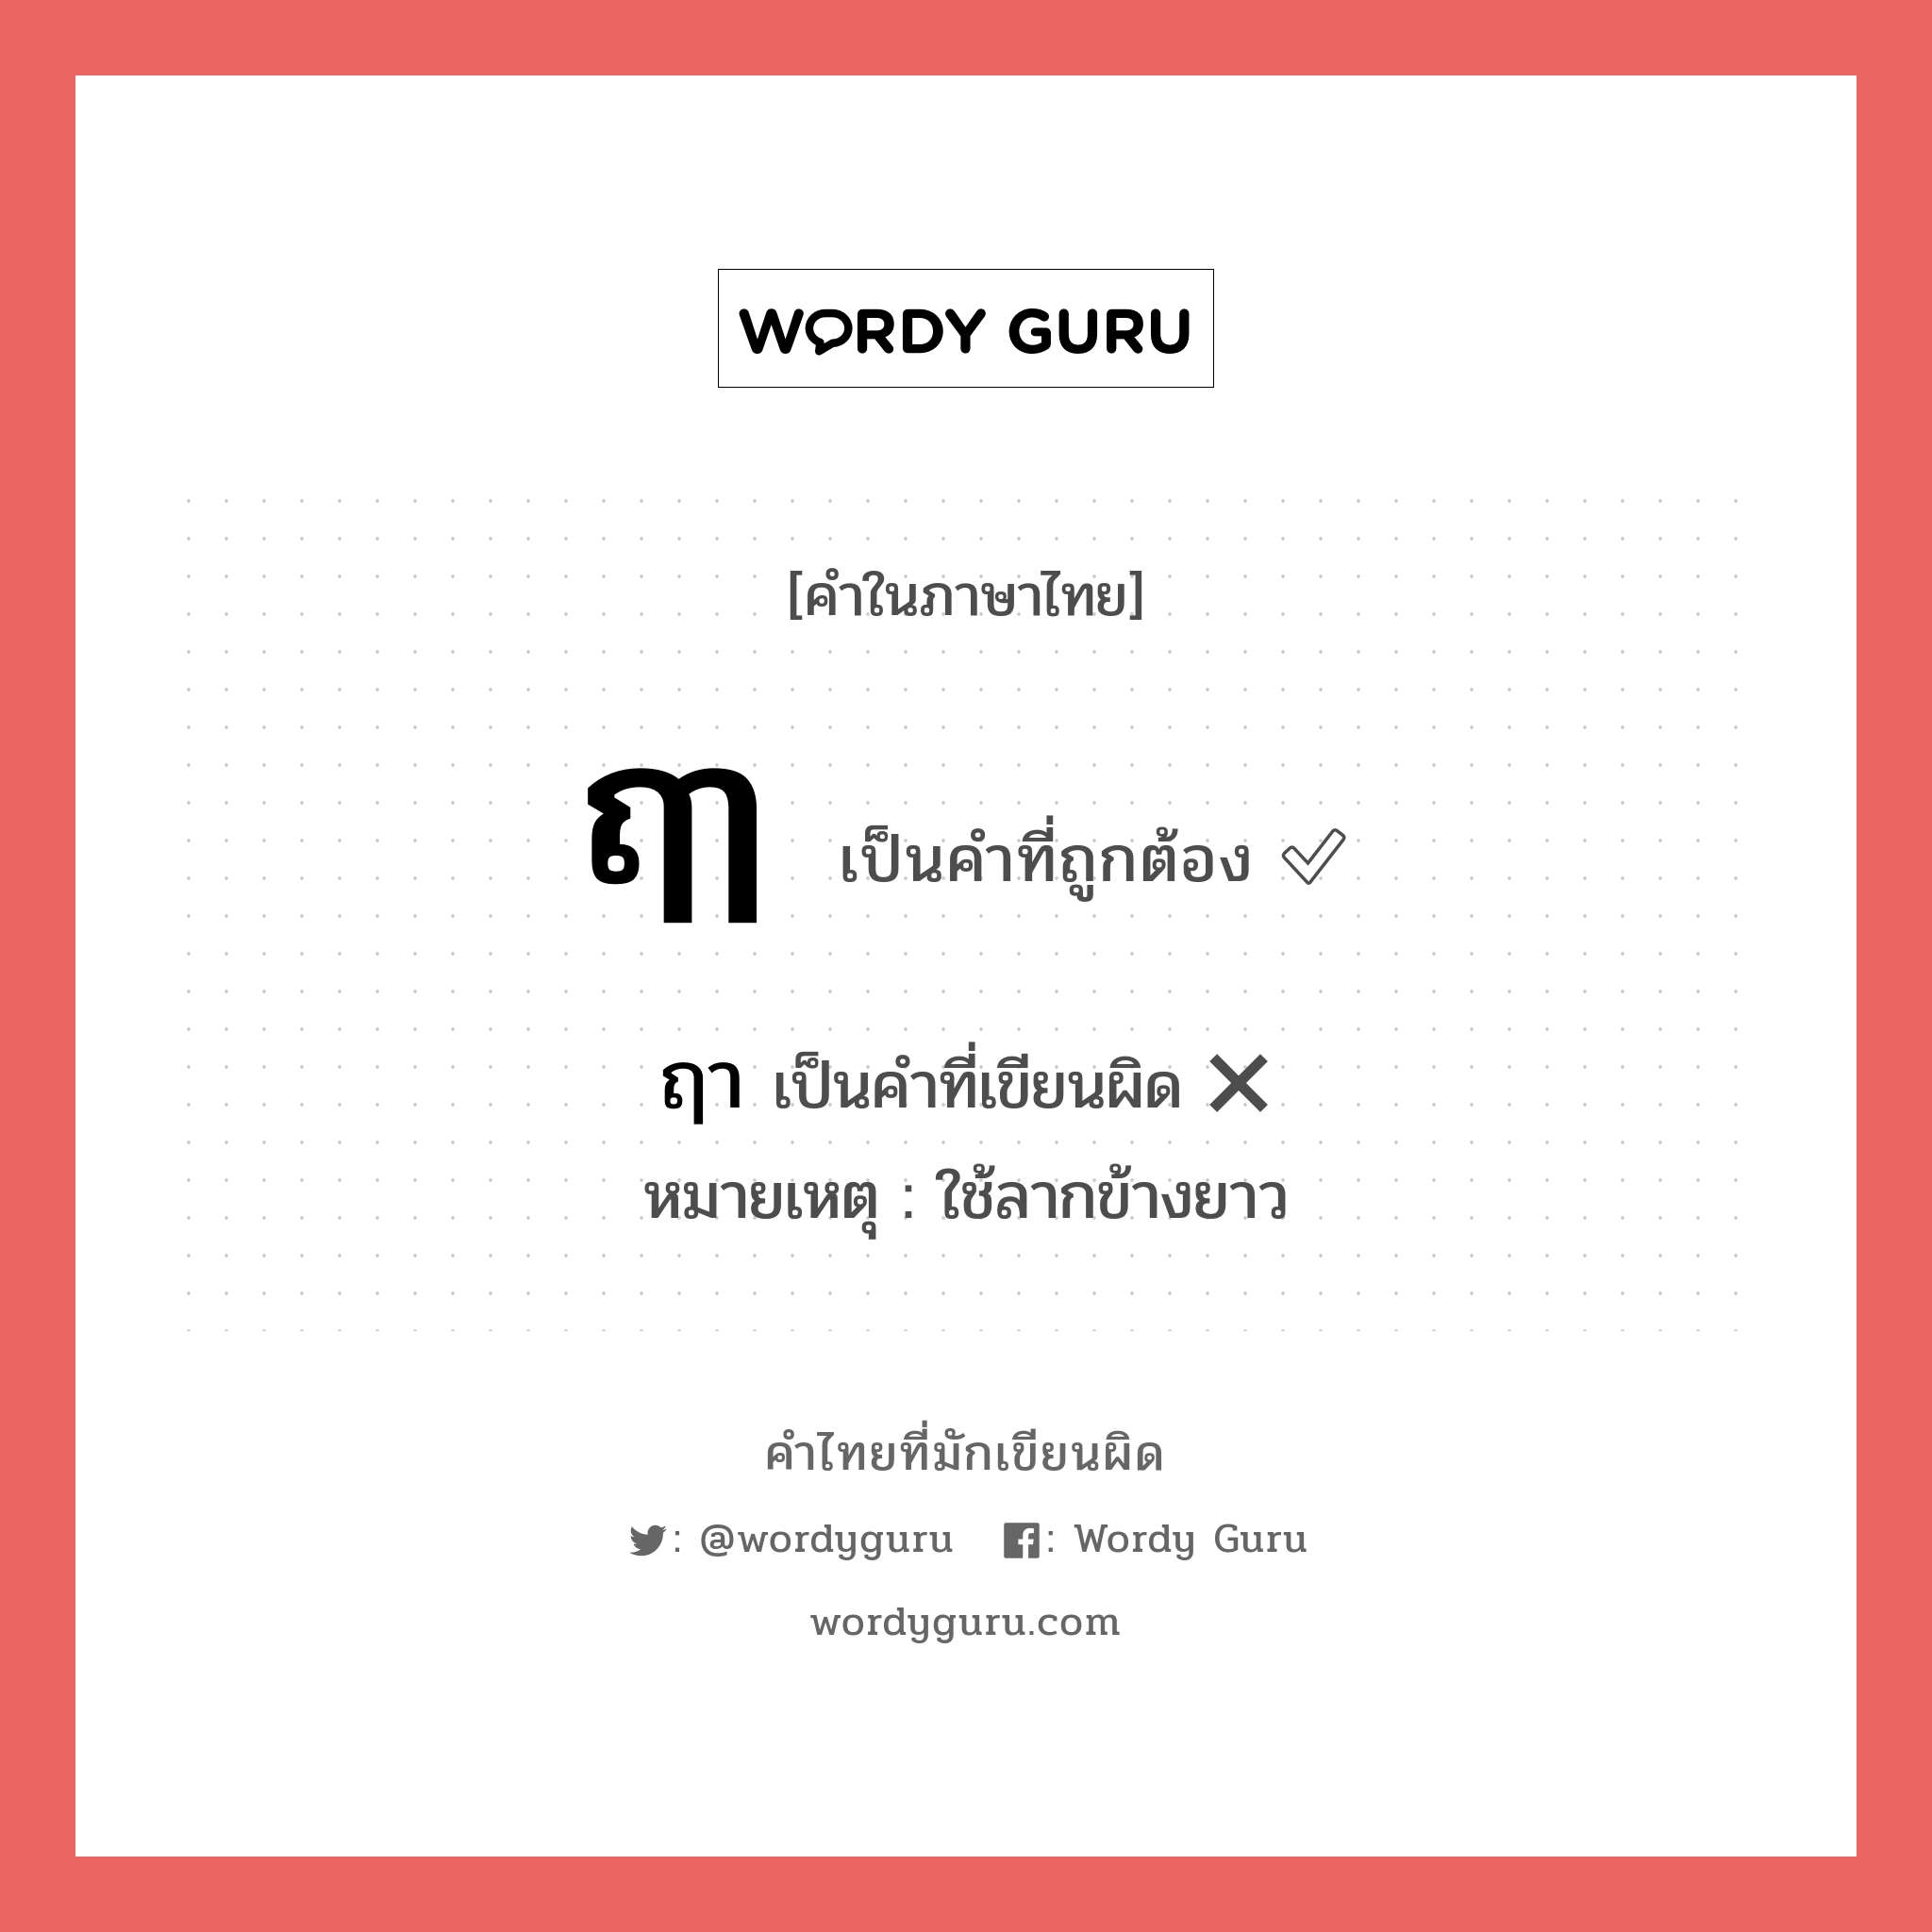 ฤา หรือ ฤๅ คำไหนเขียนถูก?, คำในภาษาไทยที่มักเขียนผิด ฤา คำที่ผิด ❌ ฤๅ หมายเหตุ ใช้ลากข้างยาว